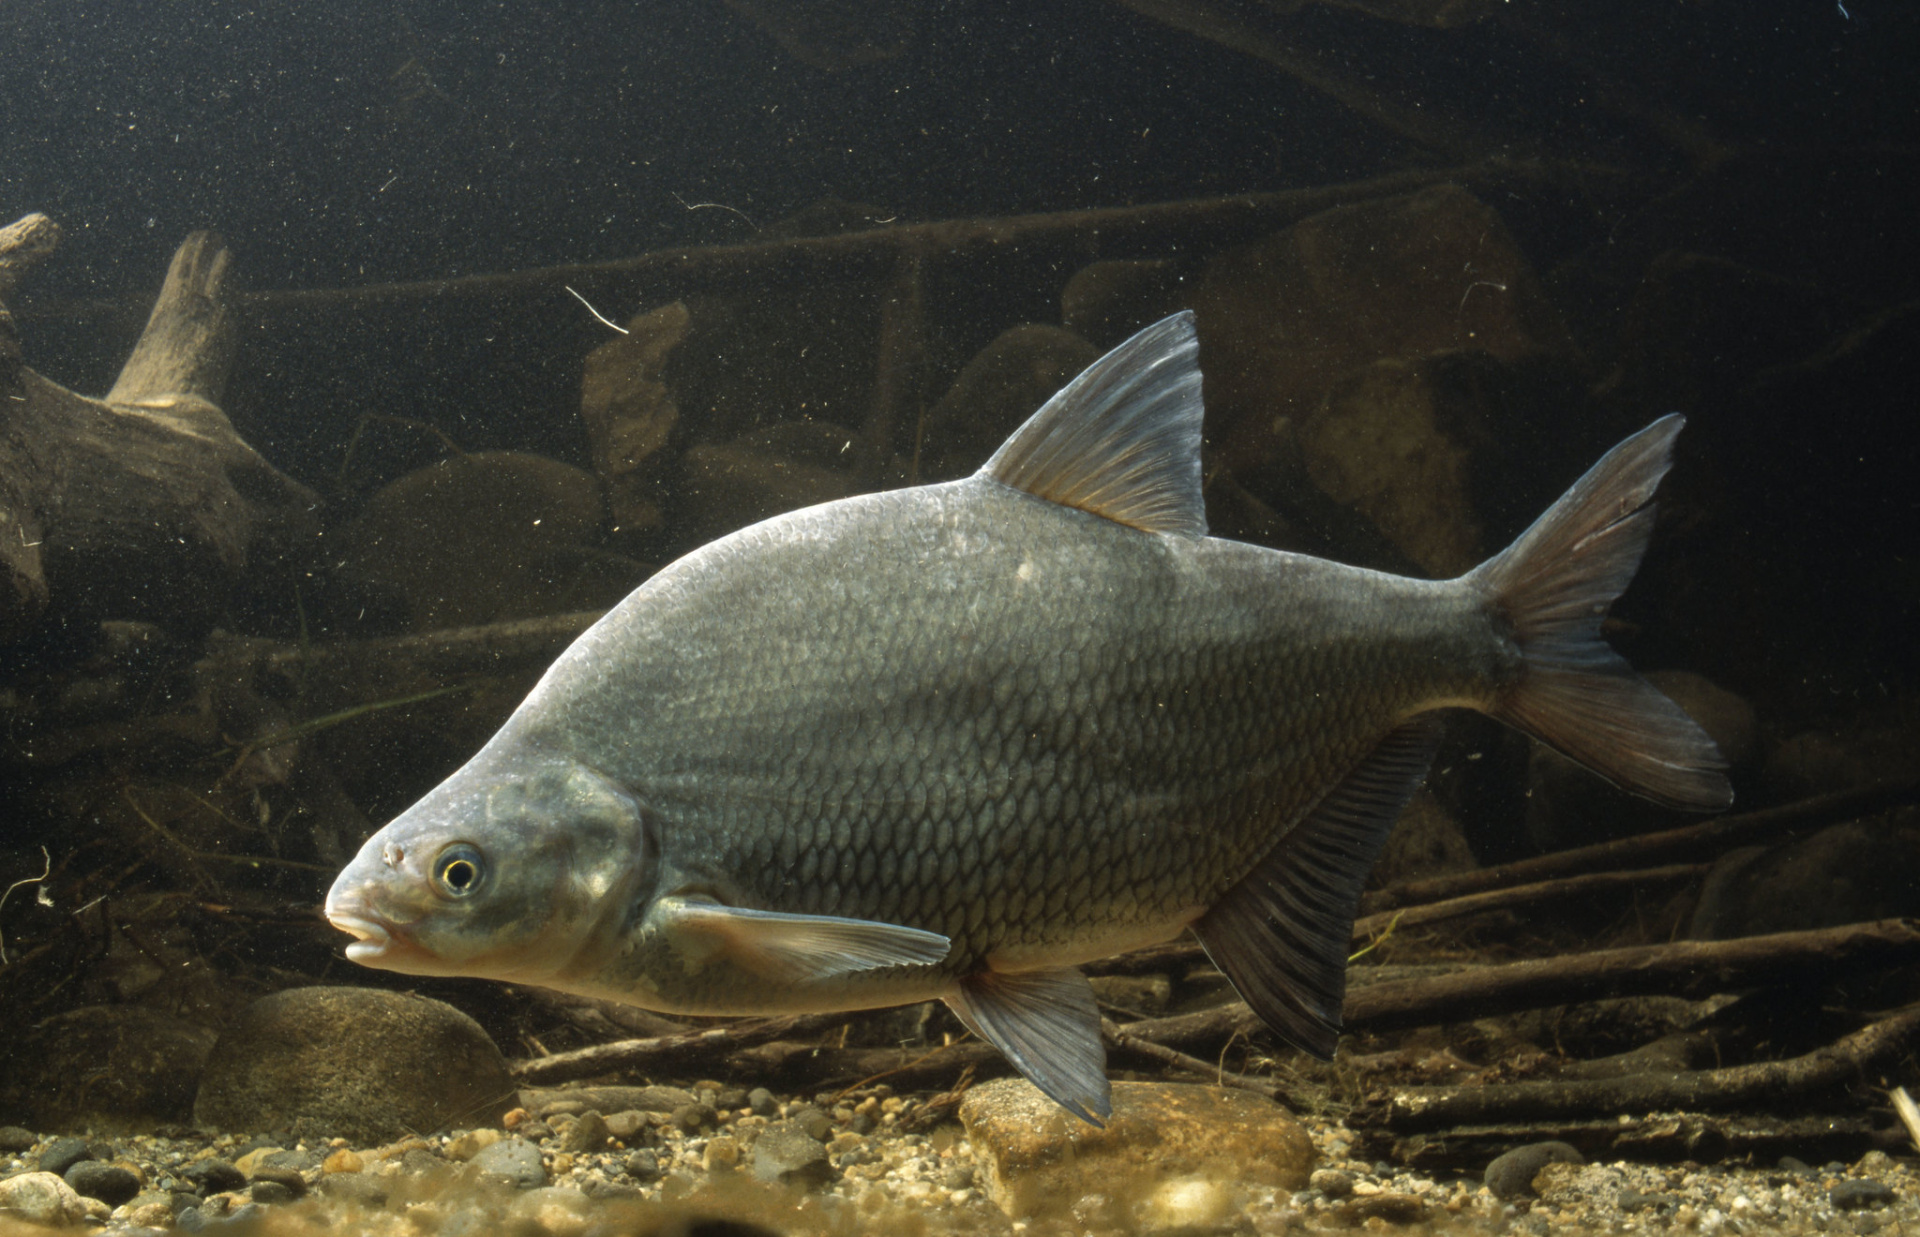 В образцах рыбы, исследуемых в рамках государственного эпизоотологического мониторинга, выявлены возбудители паразитарных болезней